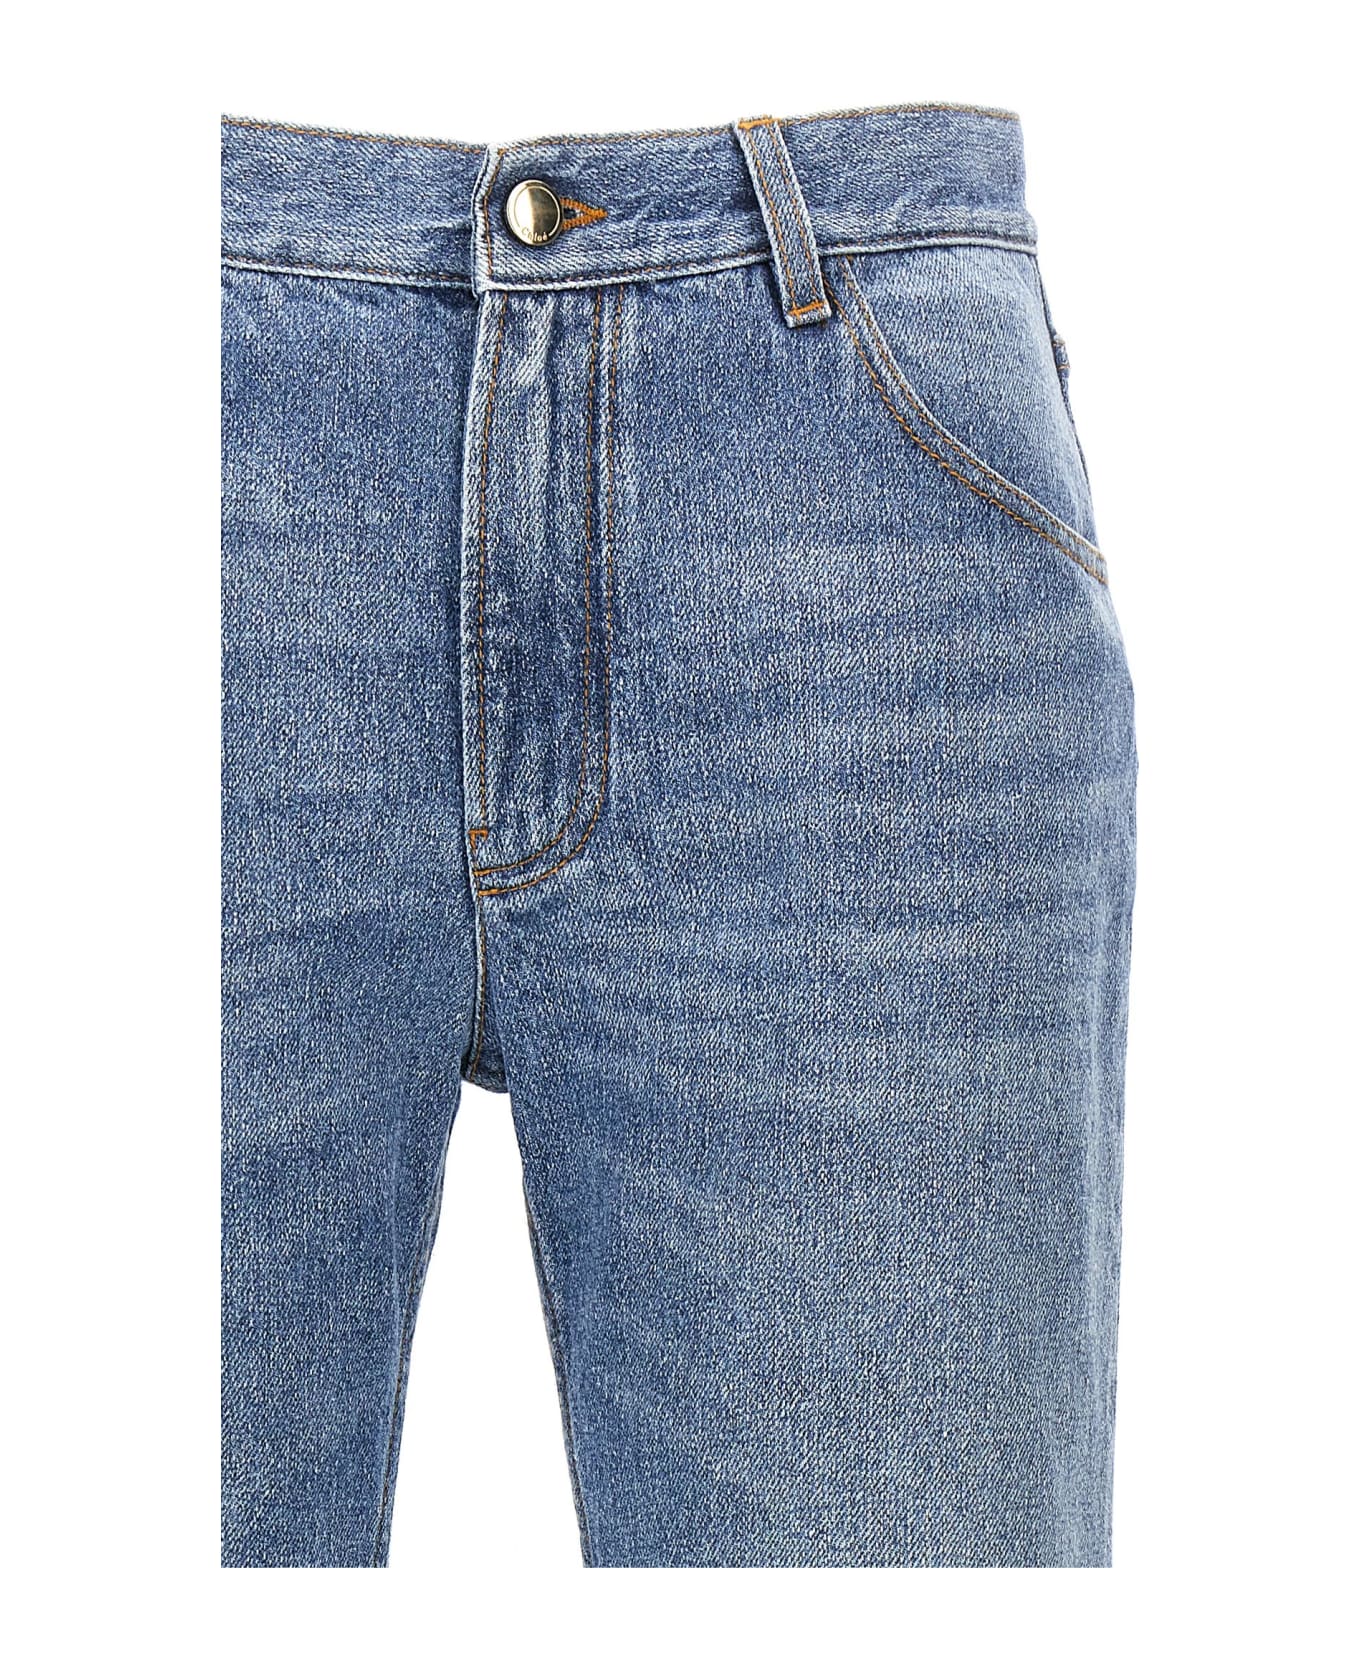 Chloé Denim Cropped Cut Jeans - Light Blue